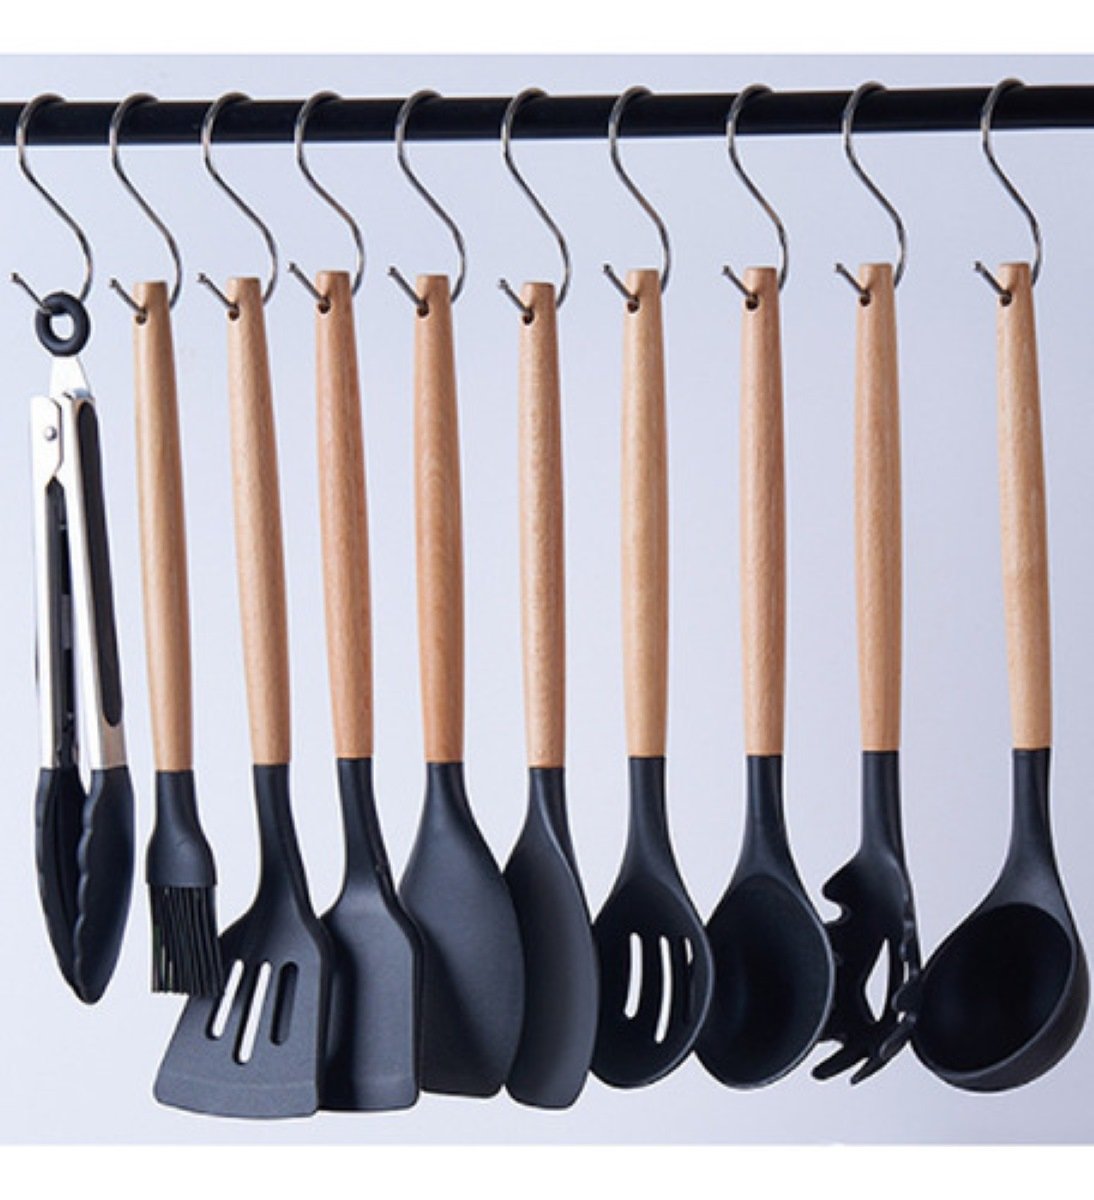 Juego completo de utensilios de cocina de 19 piezas, fabricado con silicona  y madera de primera calidad, todos en uno combo de accesorios de cocina